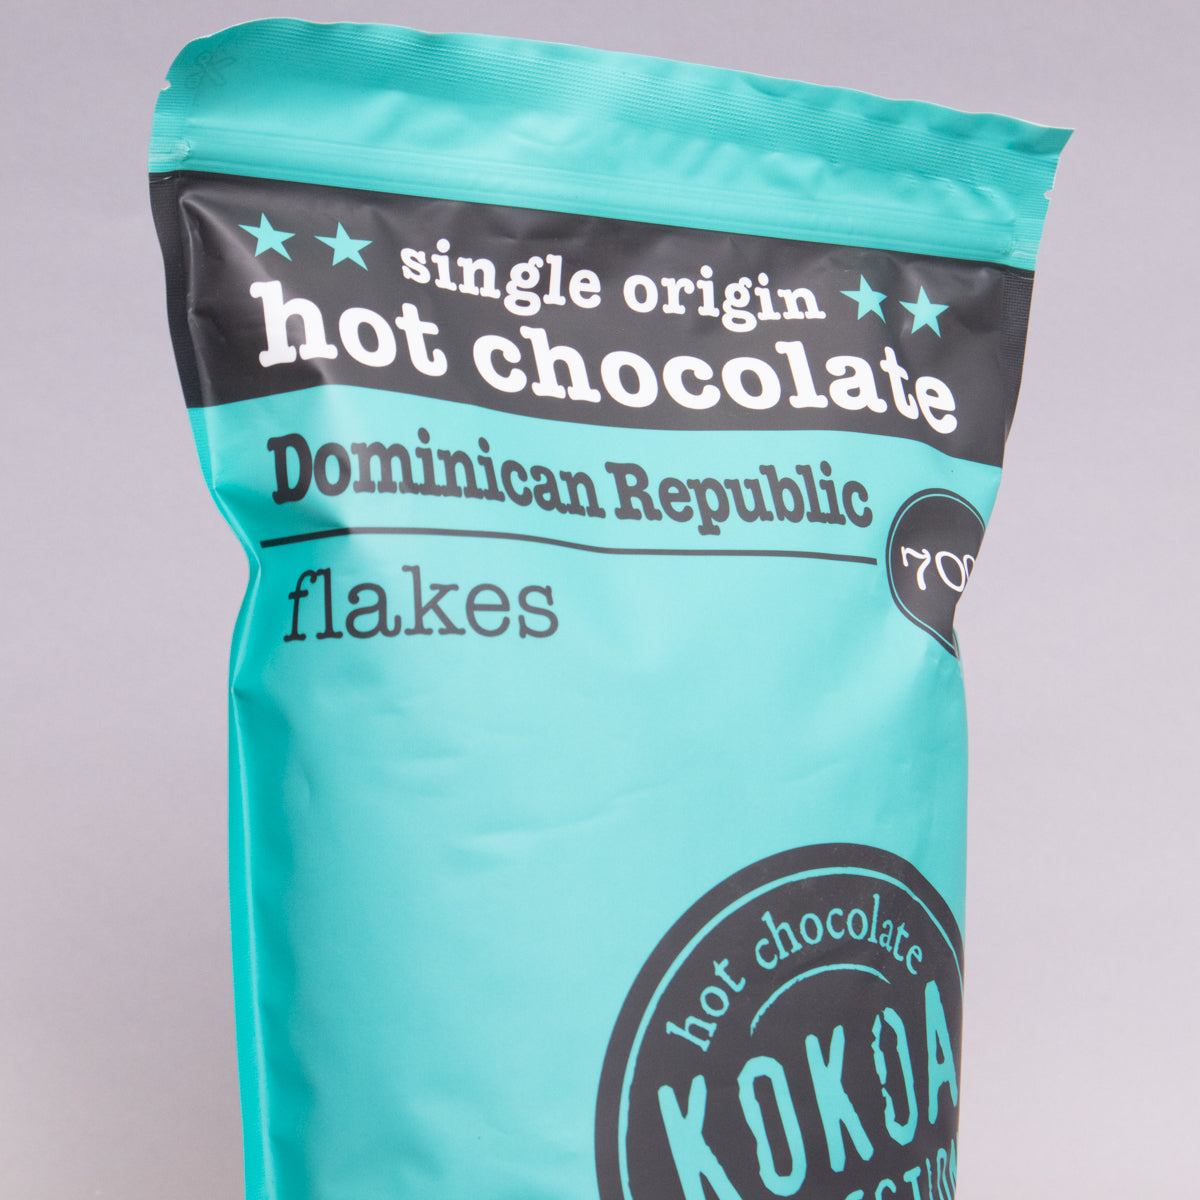 Kokoa Collection - Dominican Republic Flakes (70%)